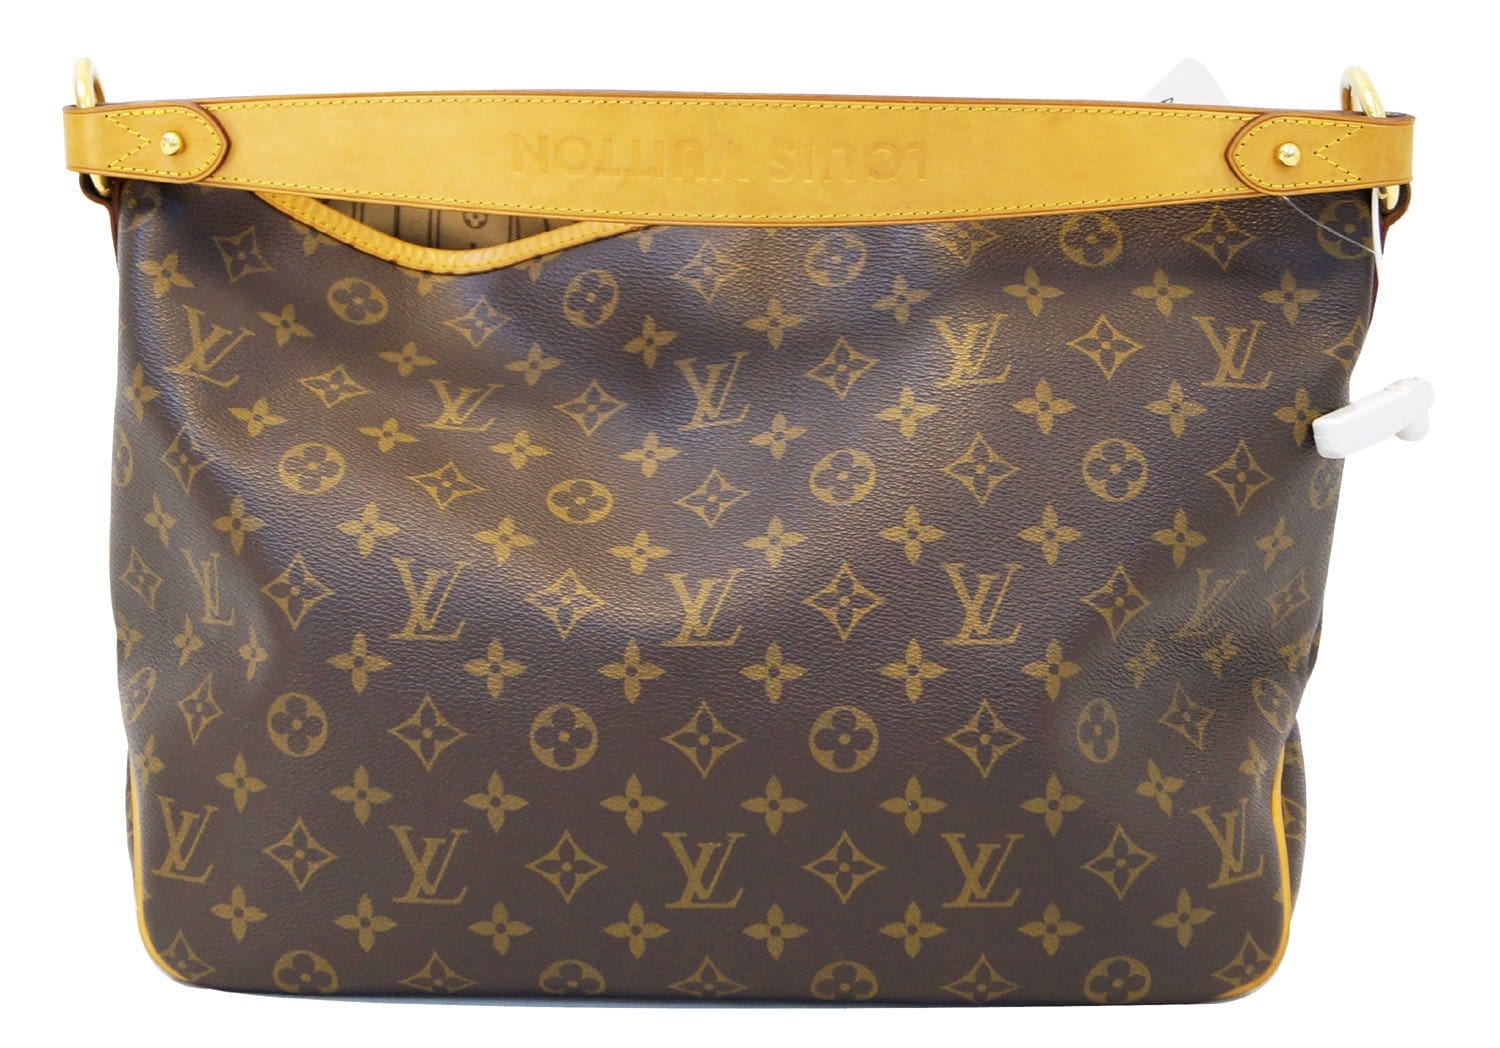 Louis Vuitton Tote Bags Crossbody Bags Hobo Bags Fashion Bag Women's